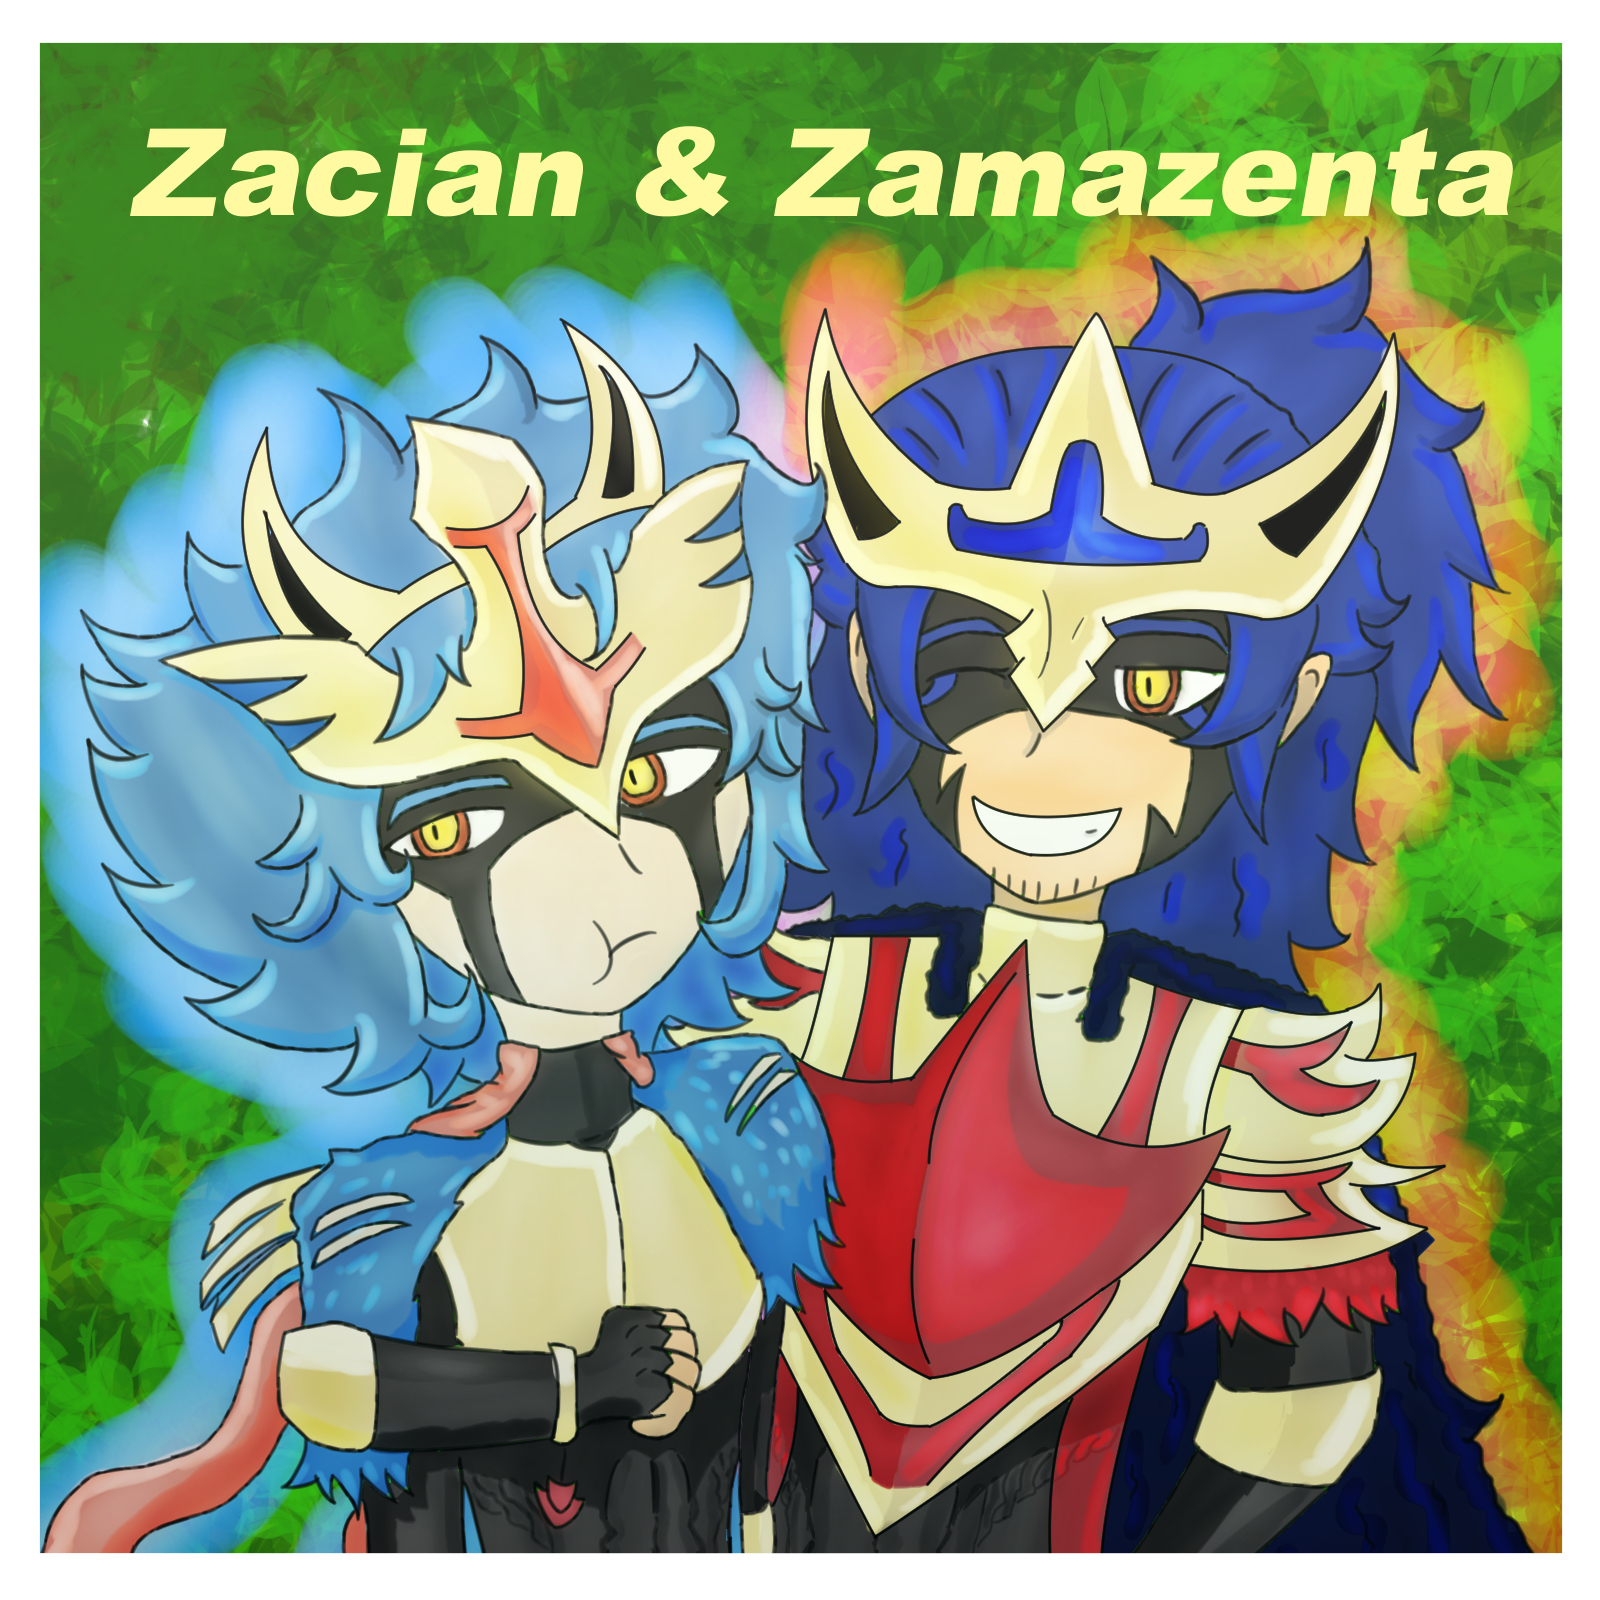 Zacian and Zamazenta by zacharybla on DeviantArt